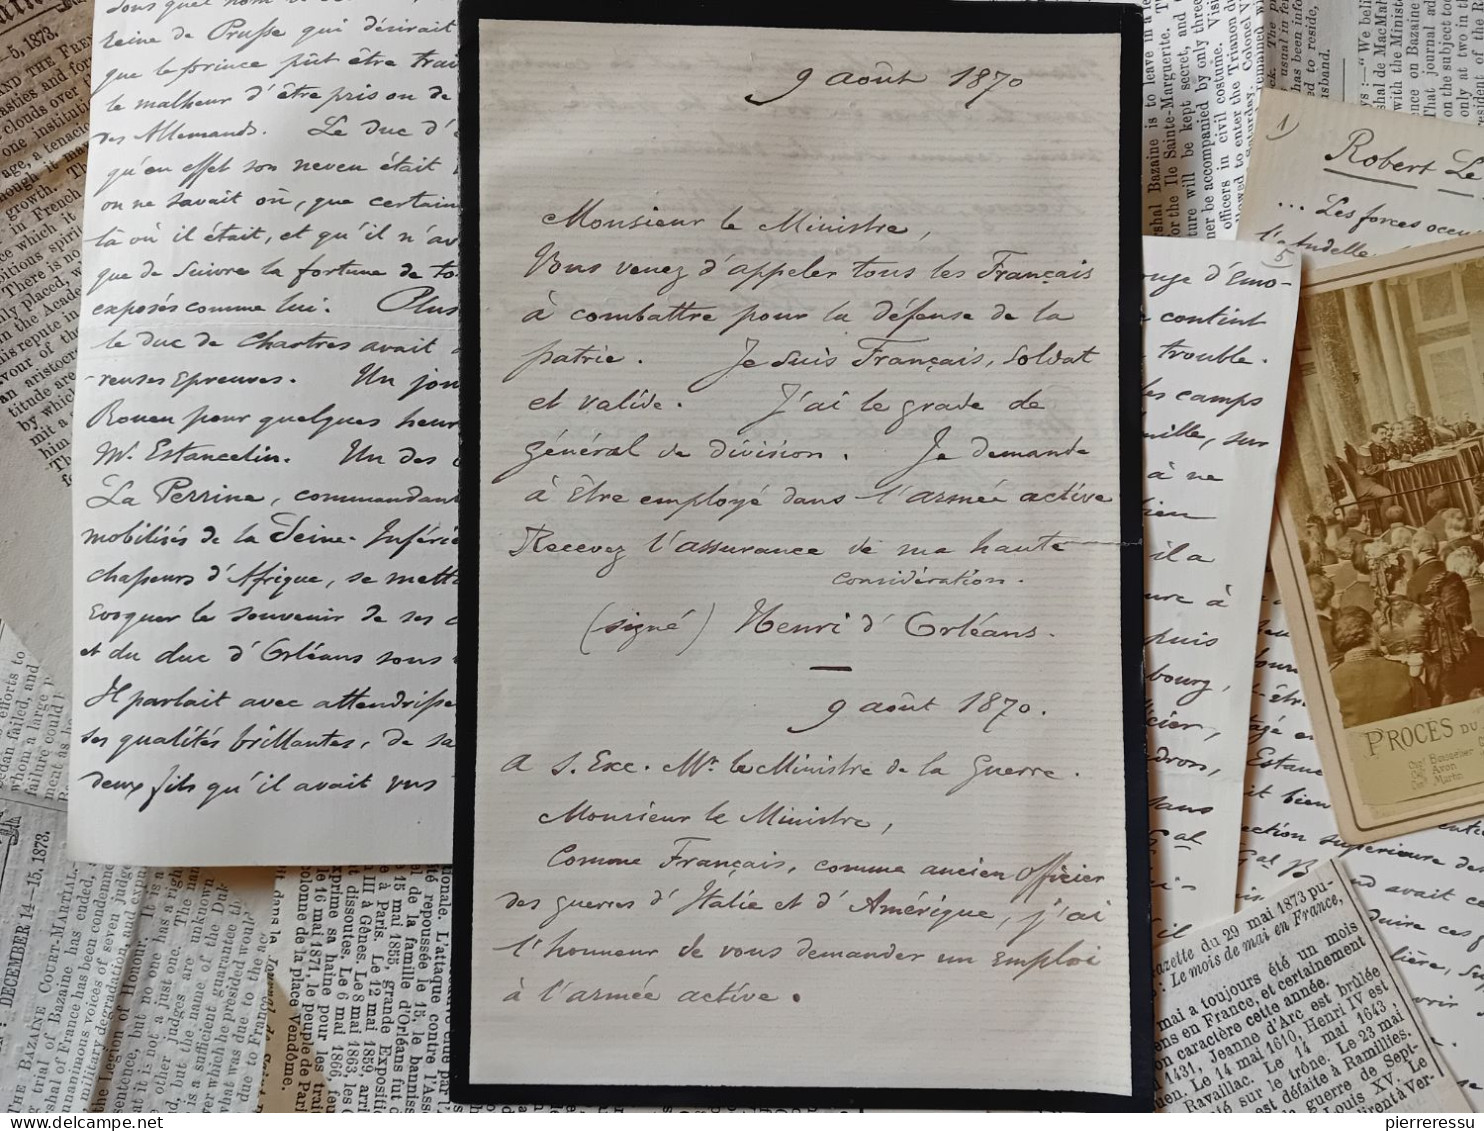 PHOTO APPERT A PARIS PROCES MARECHAL BAZAINE MANUSCRITS DUC D AUMALE ? DIVERSES COUPURES DE JOURNAUX TRIANON 1873